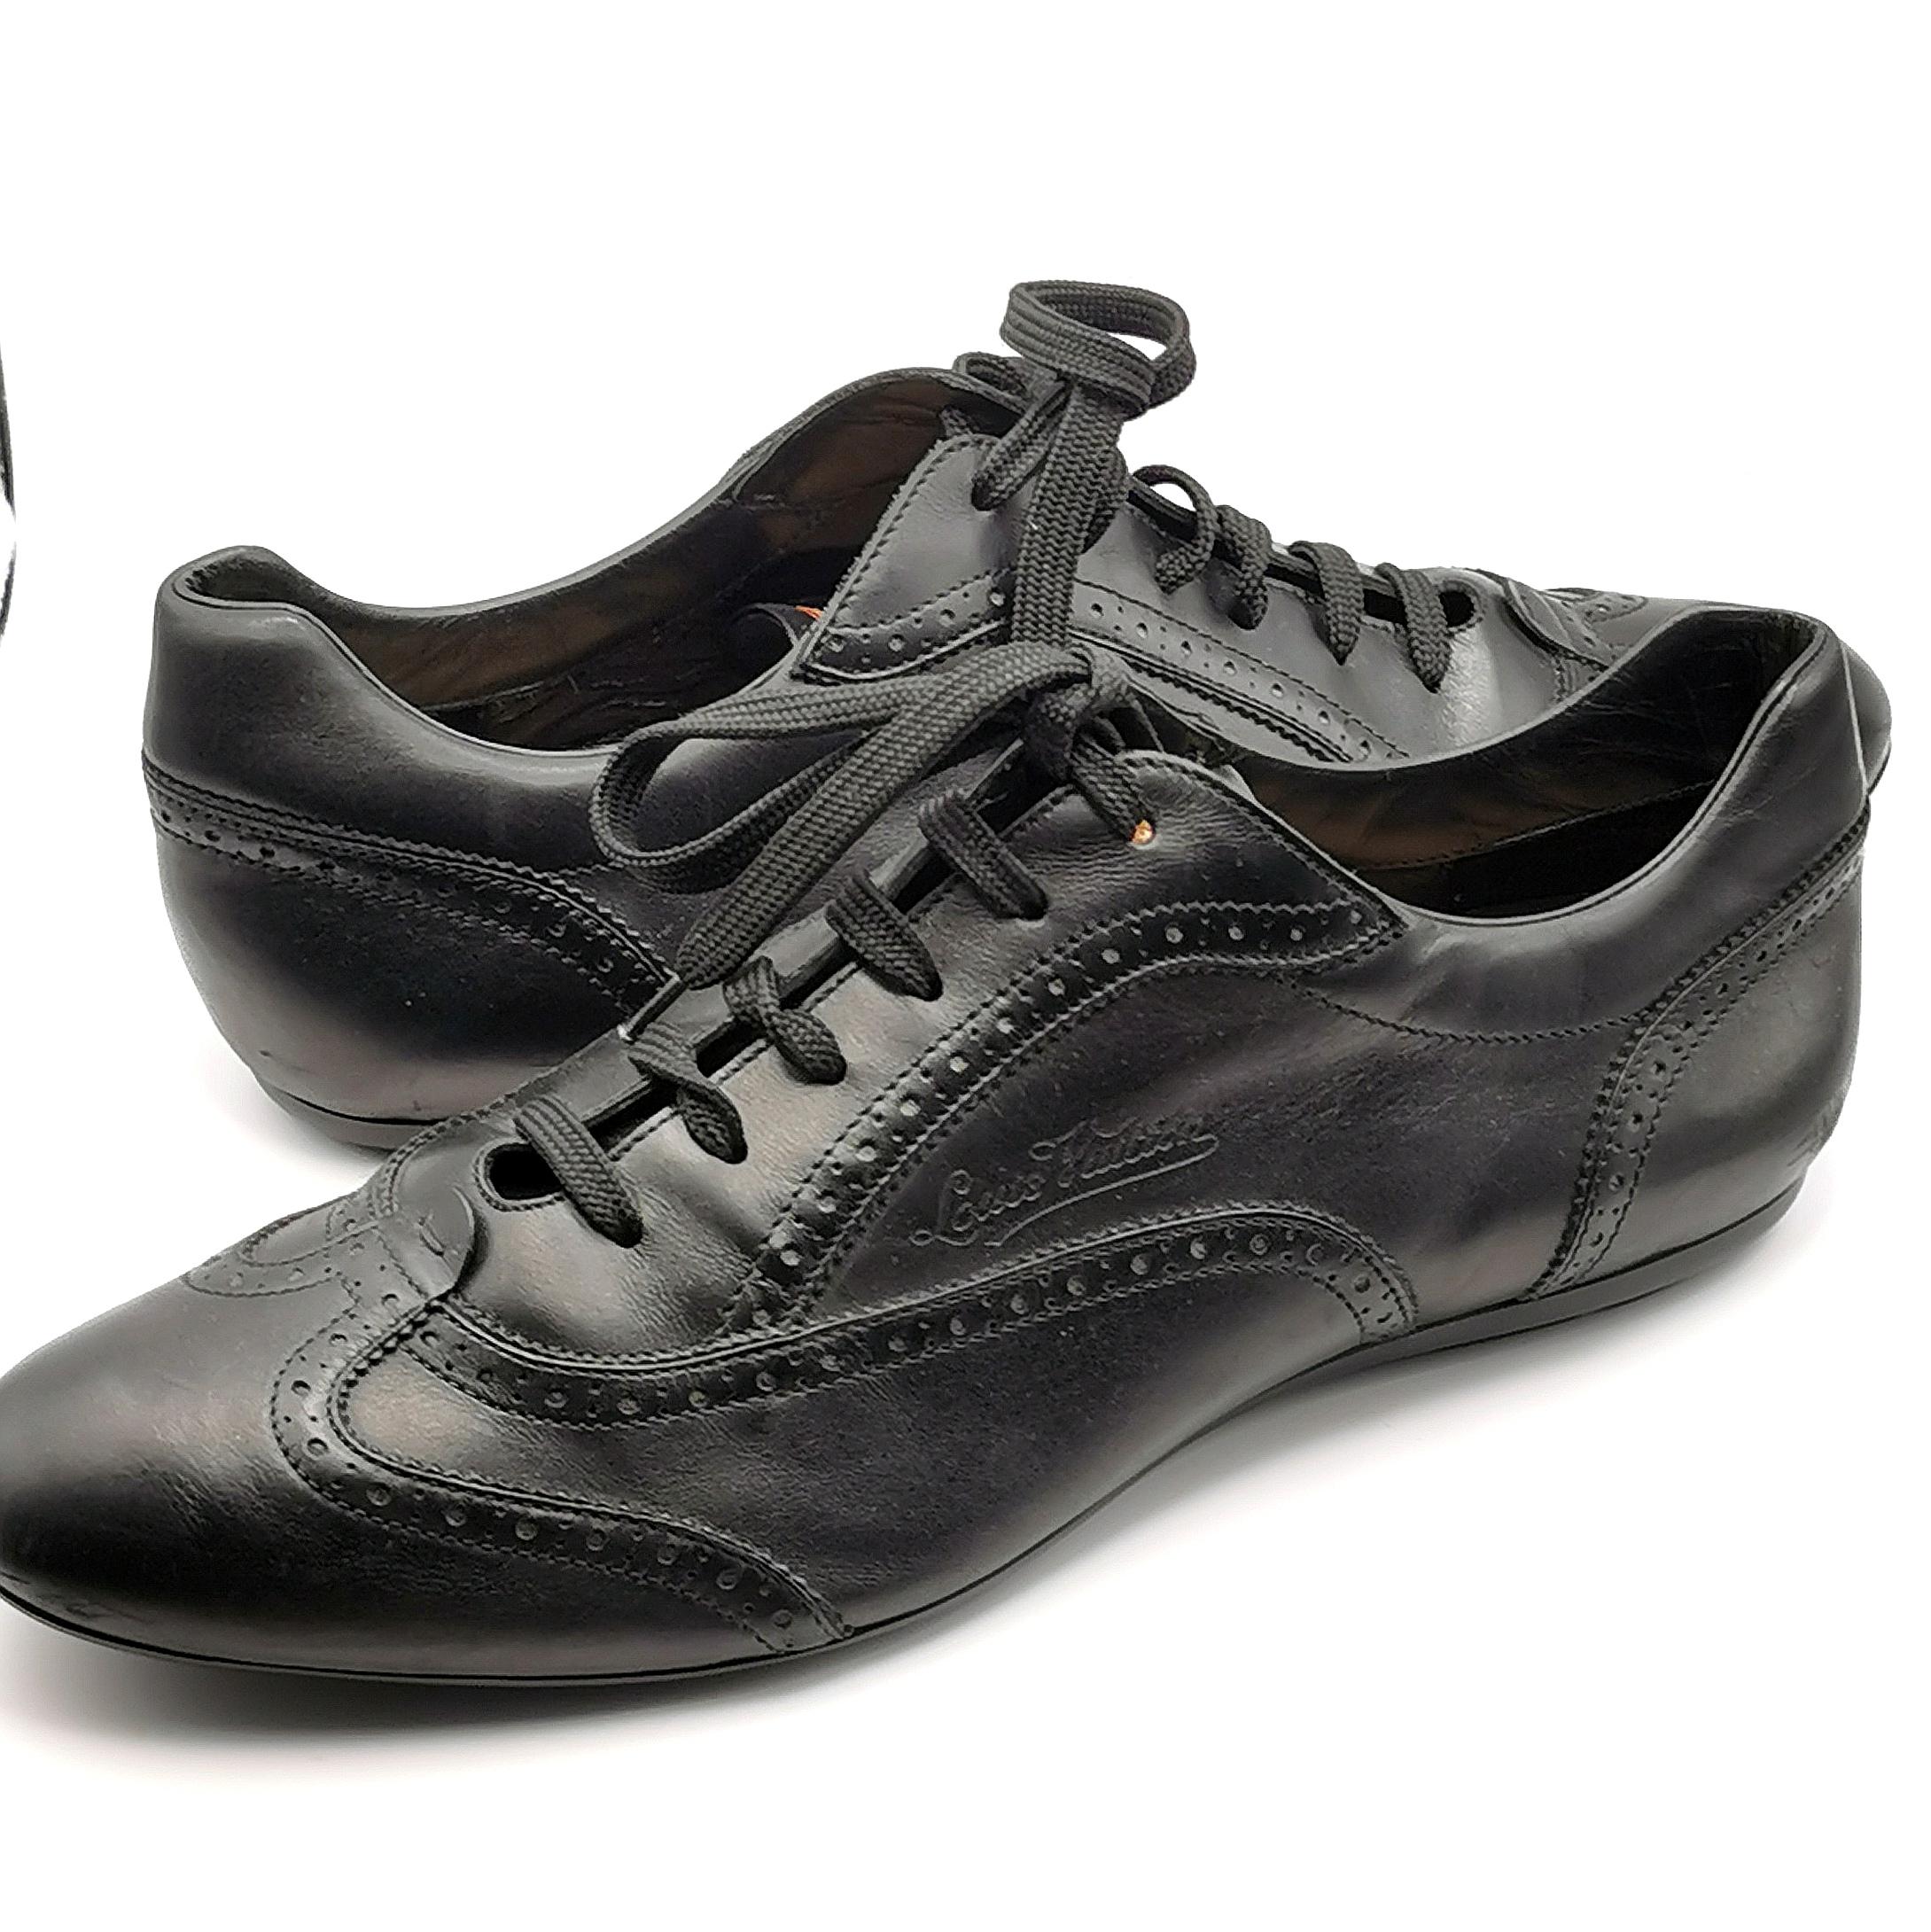 Ein super stylisches Paar Louis Vuitton Sneakers aus schwarzem Leder zum Schnüren im Brogue-Stil. 

Sie sind die perfekte Mischung aus Komfort und Stil mit einem eleganten schwarzen Leder-Brogue-Stil mit geprägtem Louis Vuitton-Logo und